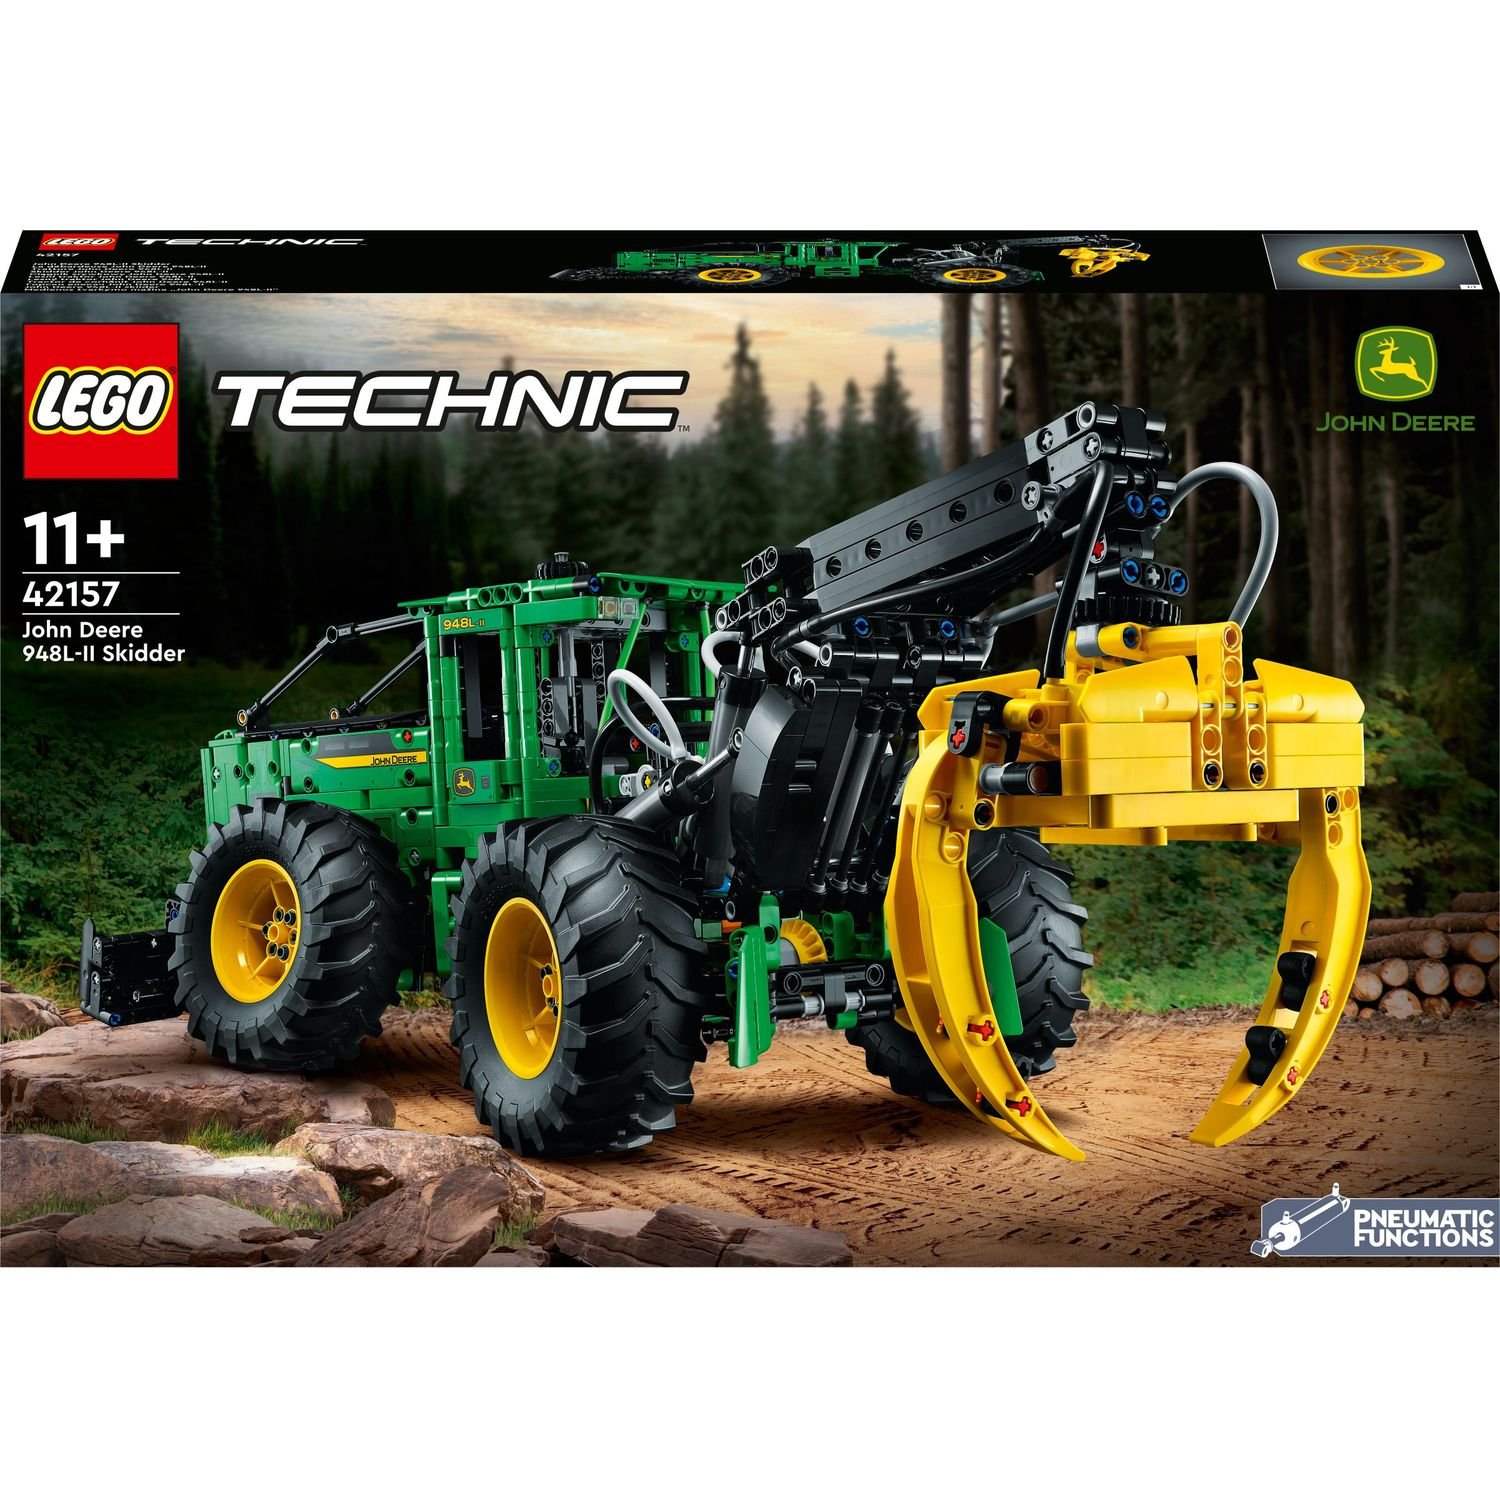 Конструктор LEGO Technic Трелювальний трактор "John Deere" 948L-II, 1492 деталі (42157) - фото 1